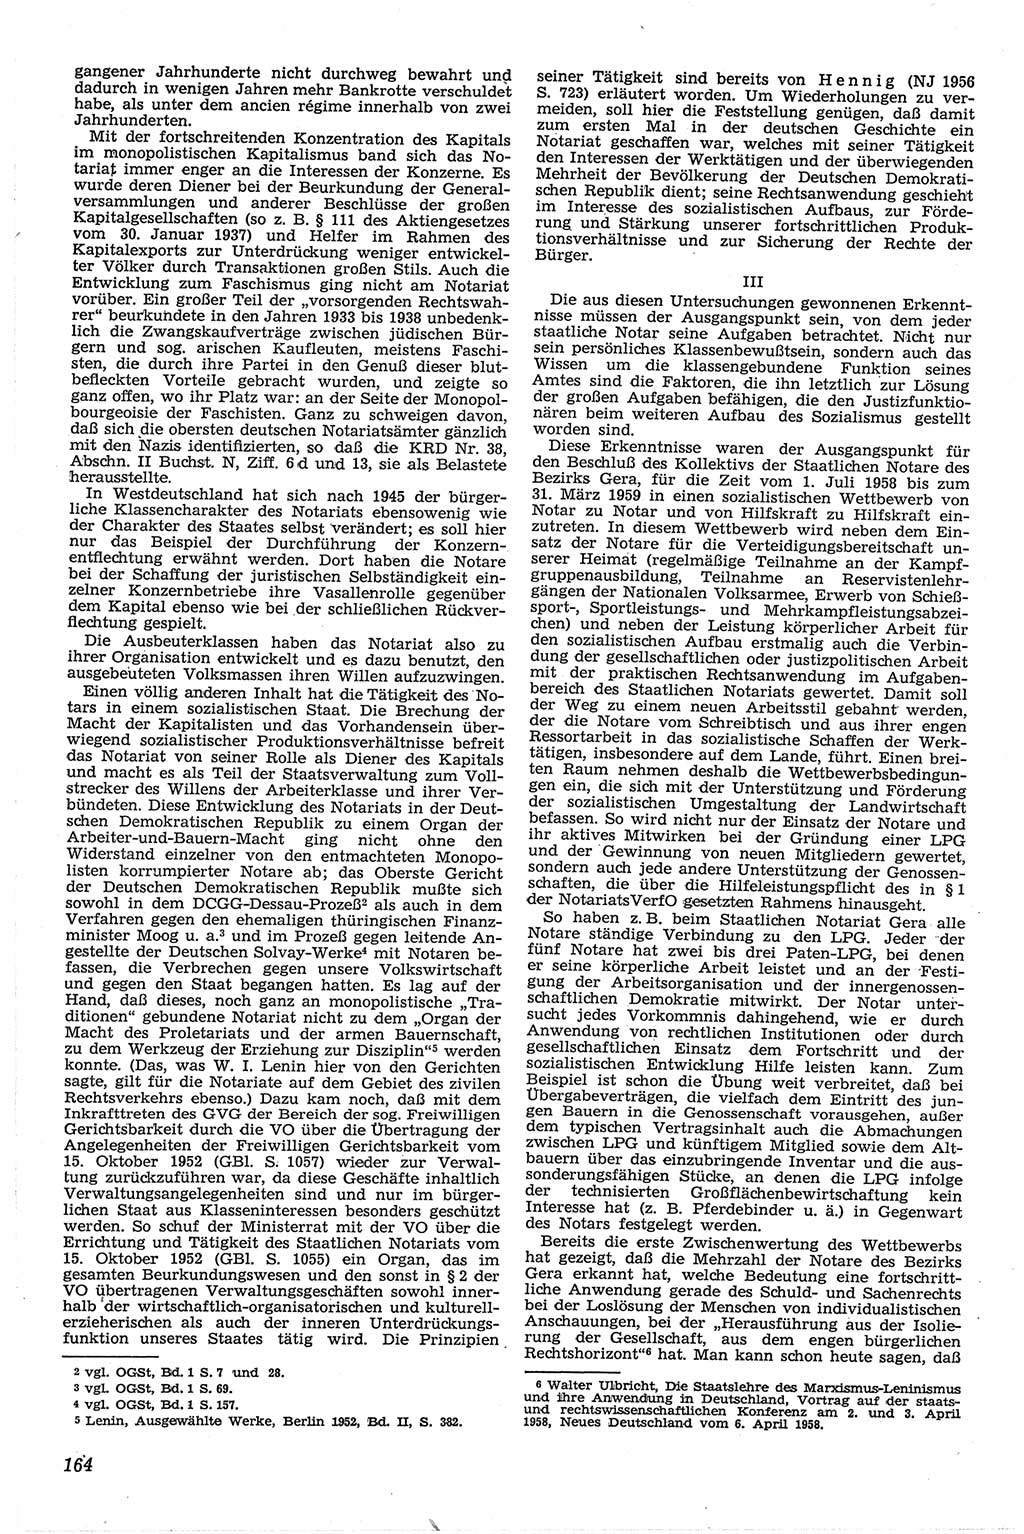 Neue Justiz (NJ), Zeitschrift für Recht und Rechtswissenschaft [Deutsche Demokratische Republik (DDR)], 13. Jahrgang 1959, Seite 164 (NJ DDR 1959, S. 164)